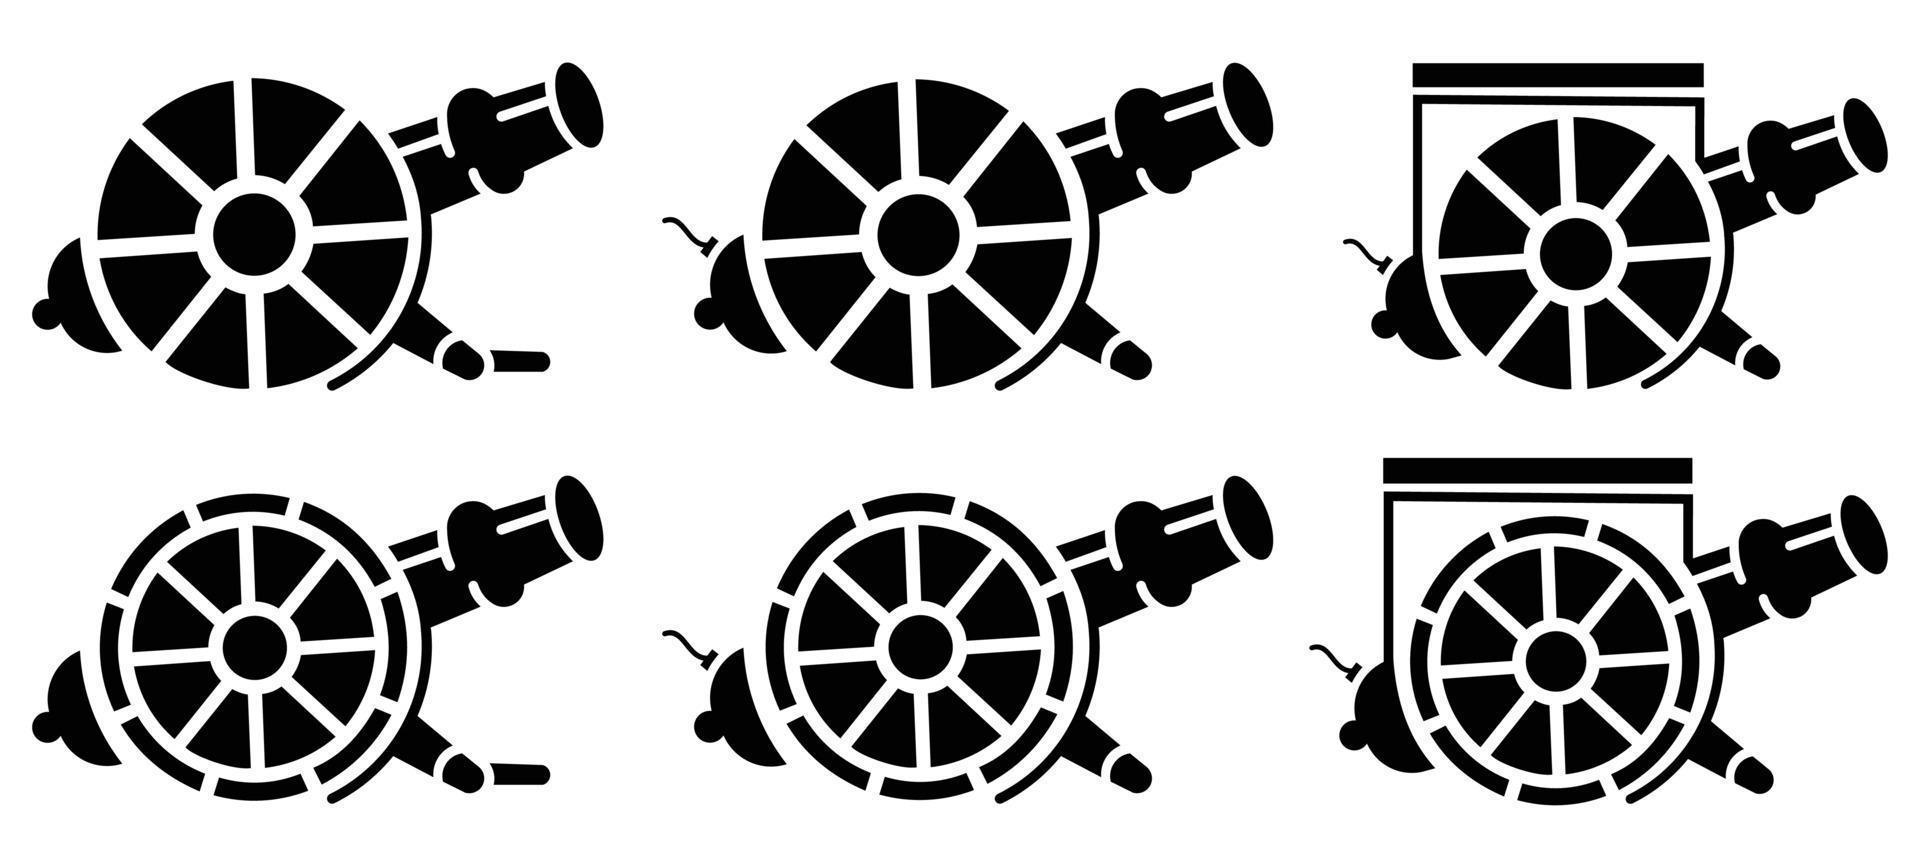 cannon artillery logo design vector icon,Museum  cannon symbol stock vector